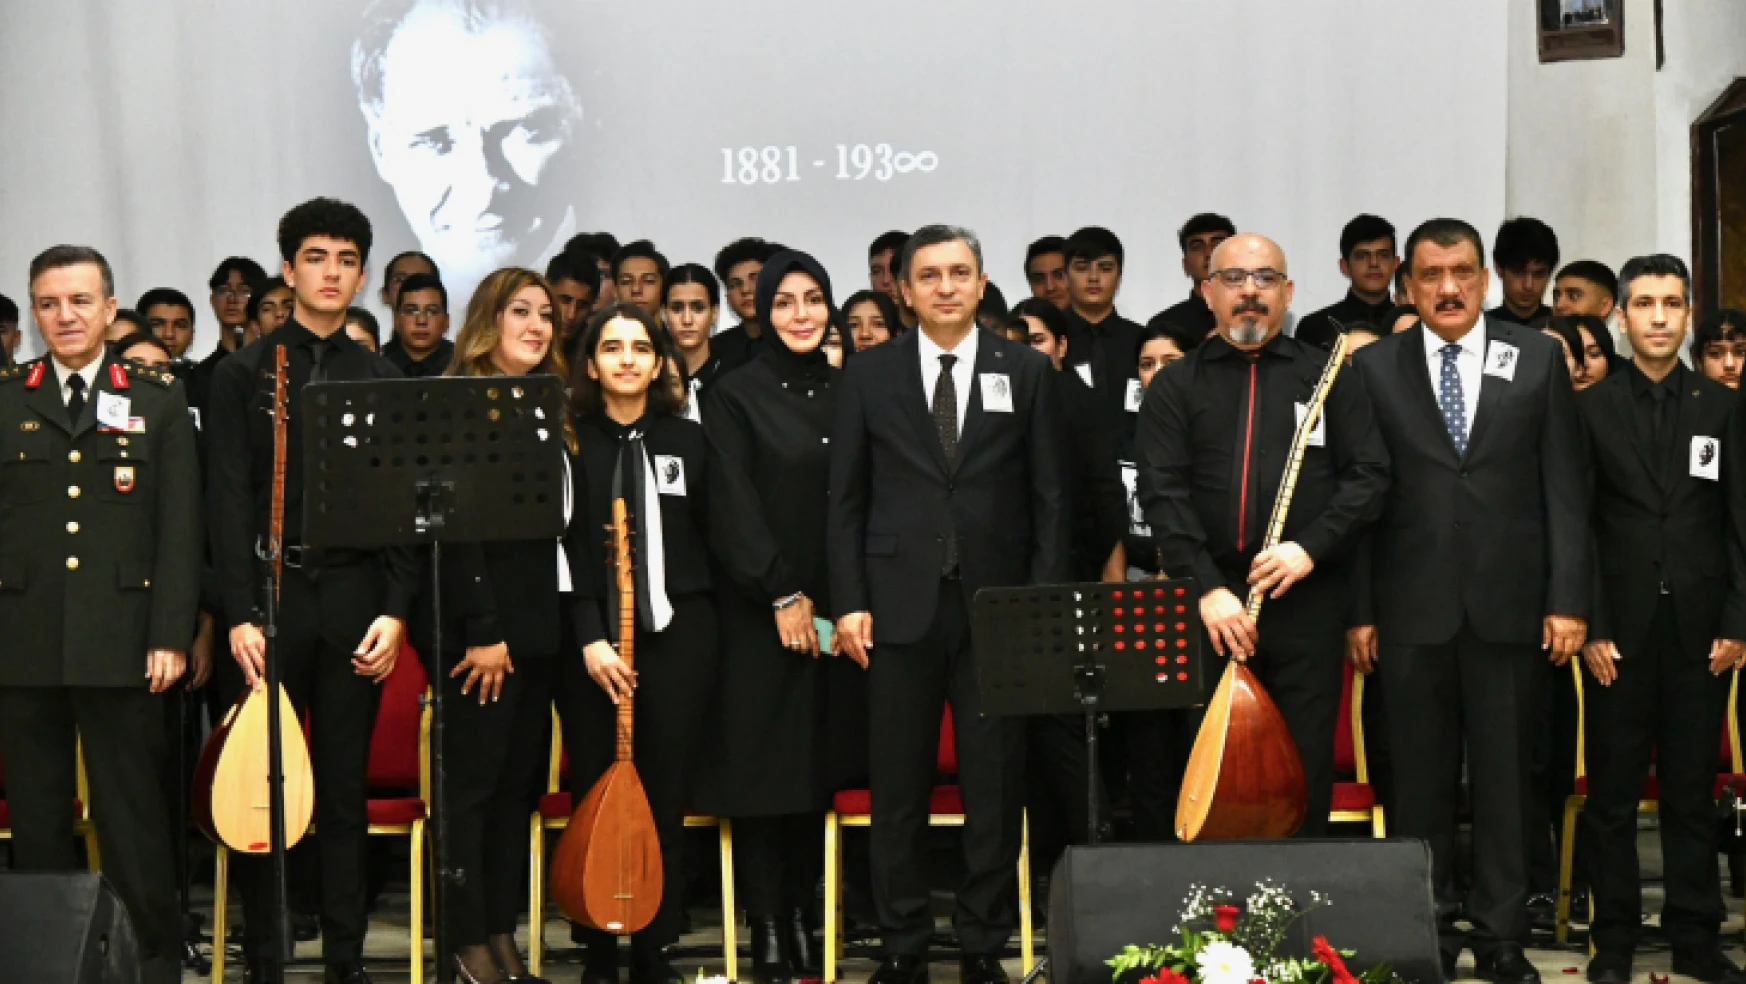 Büyük Önder Mustafa Kemal Atatürk, Malatya'da Düzenlenen Törenle Anıldı